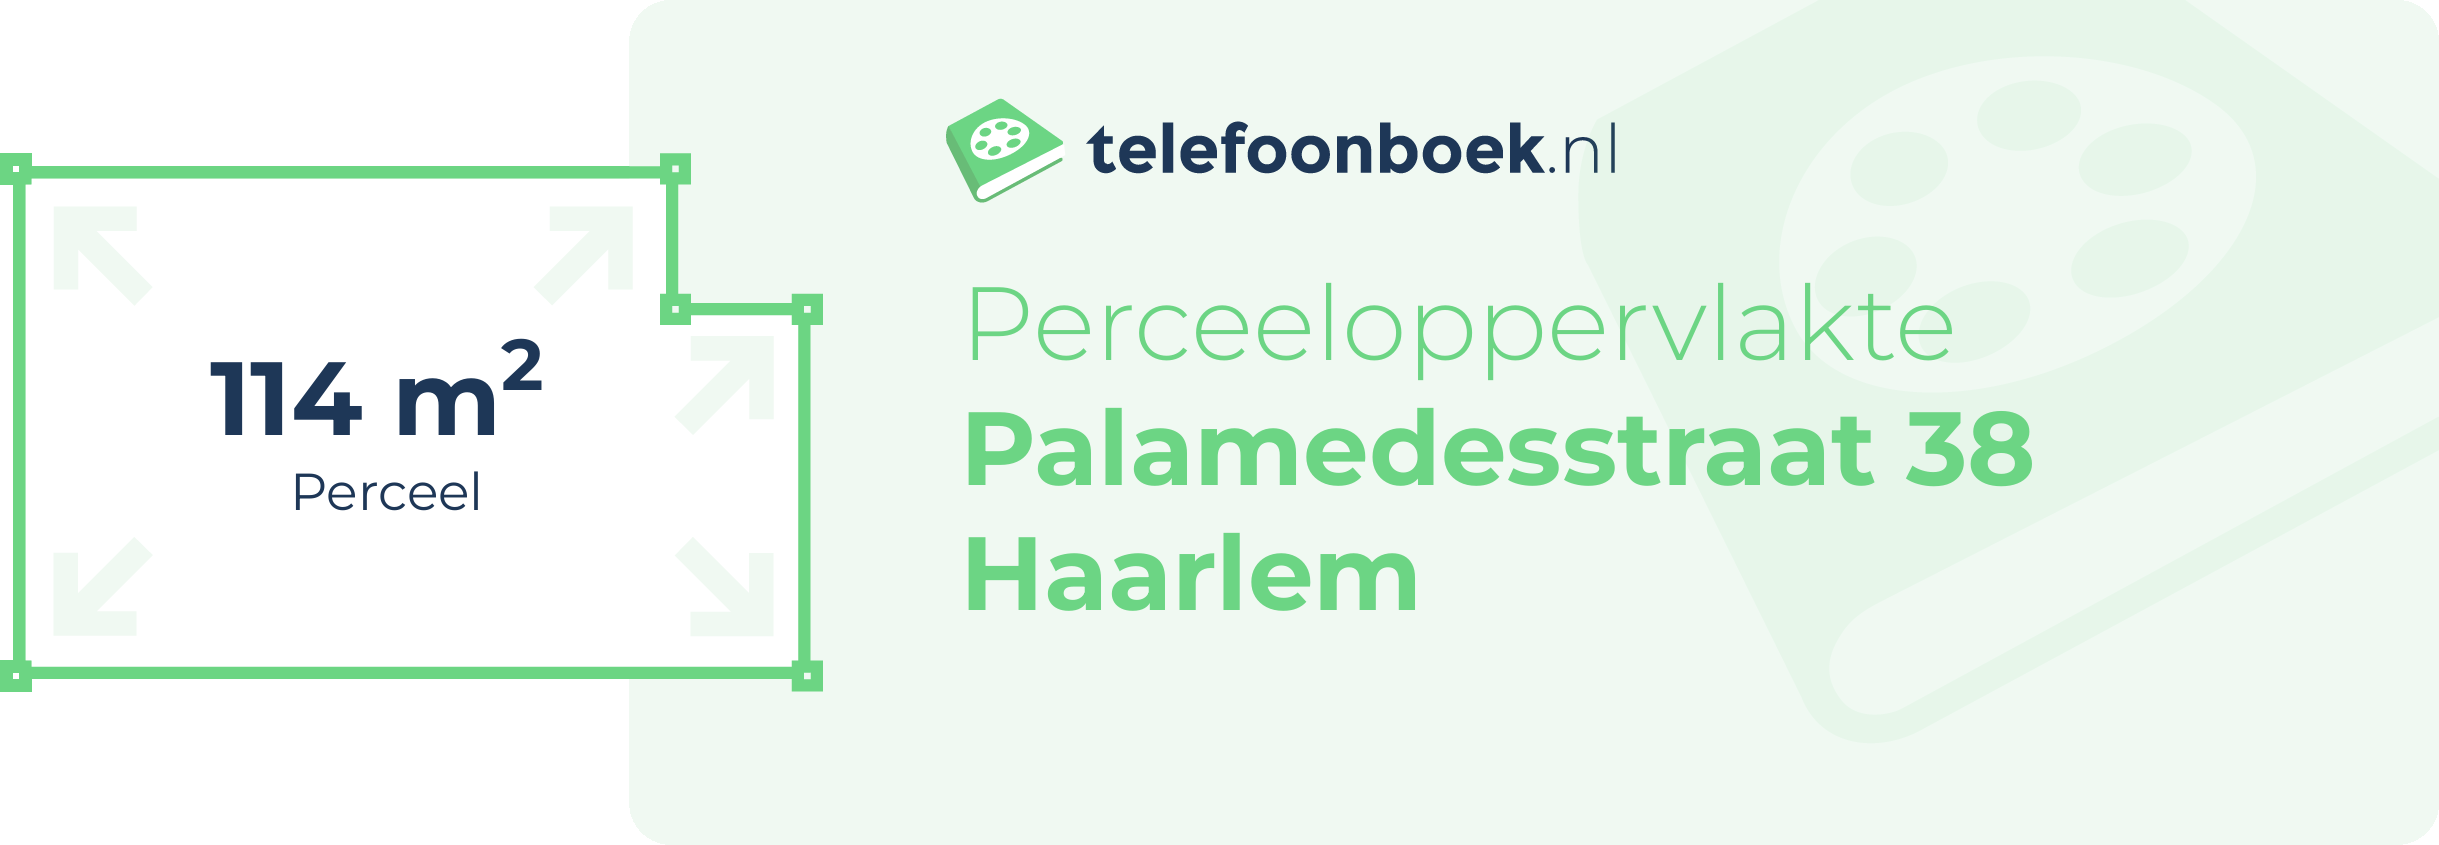 Perceeloppervlakte Palamedesstraat 38 Haarlem